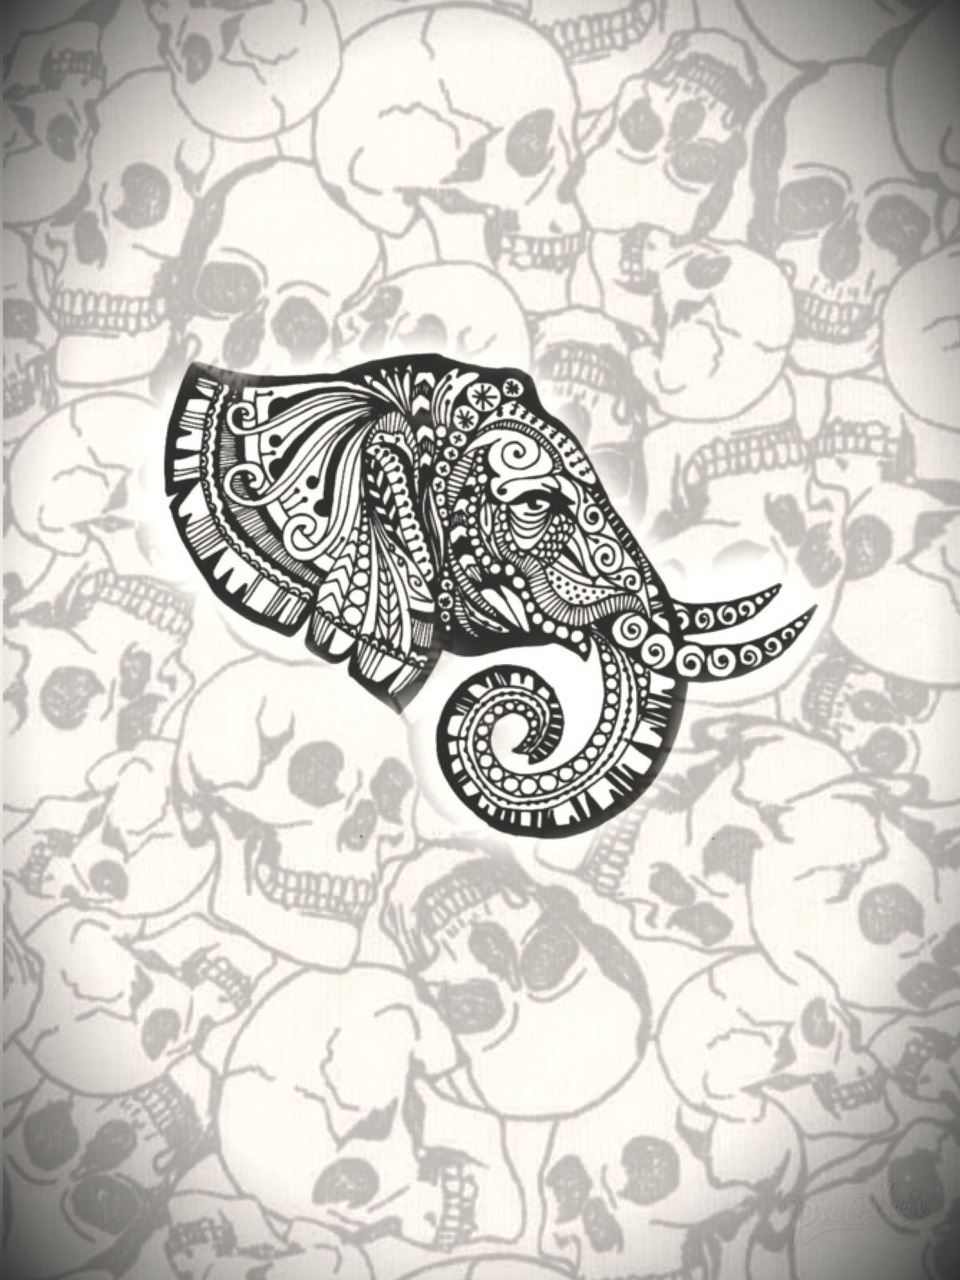 Calaveras, Elefante, And Elephant Image - Fondos De Calaveras Png - HD Wallpaper 